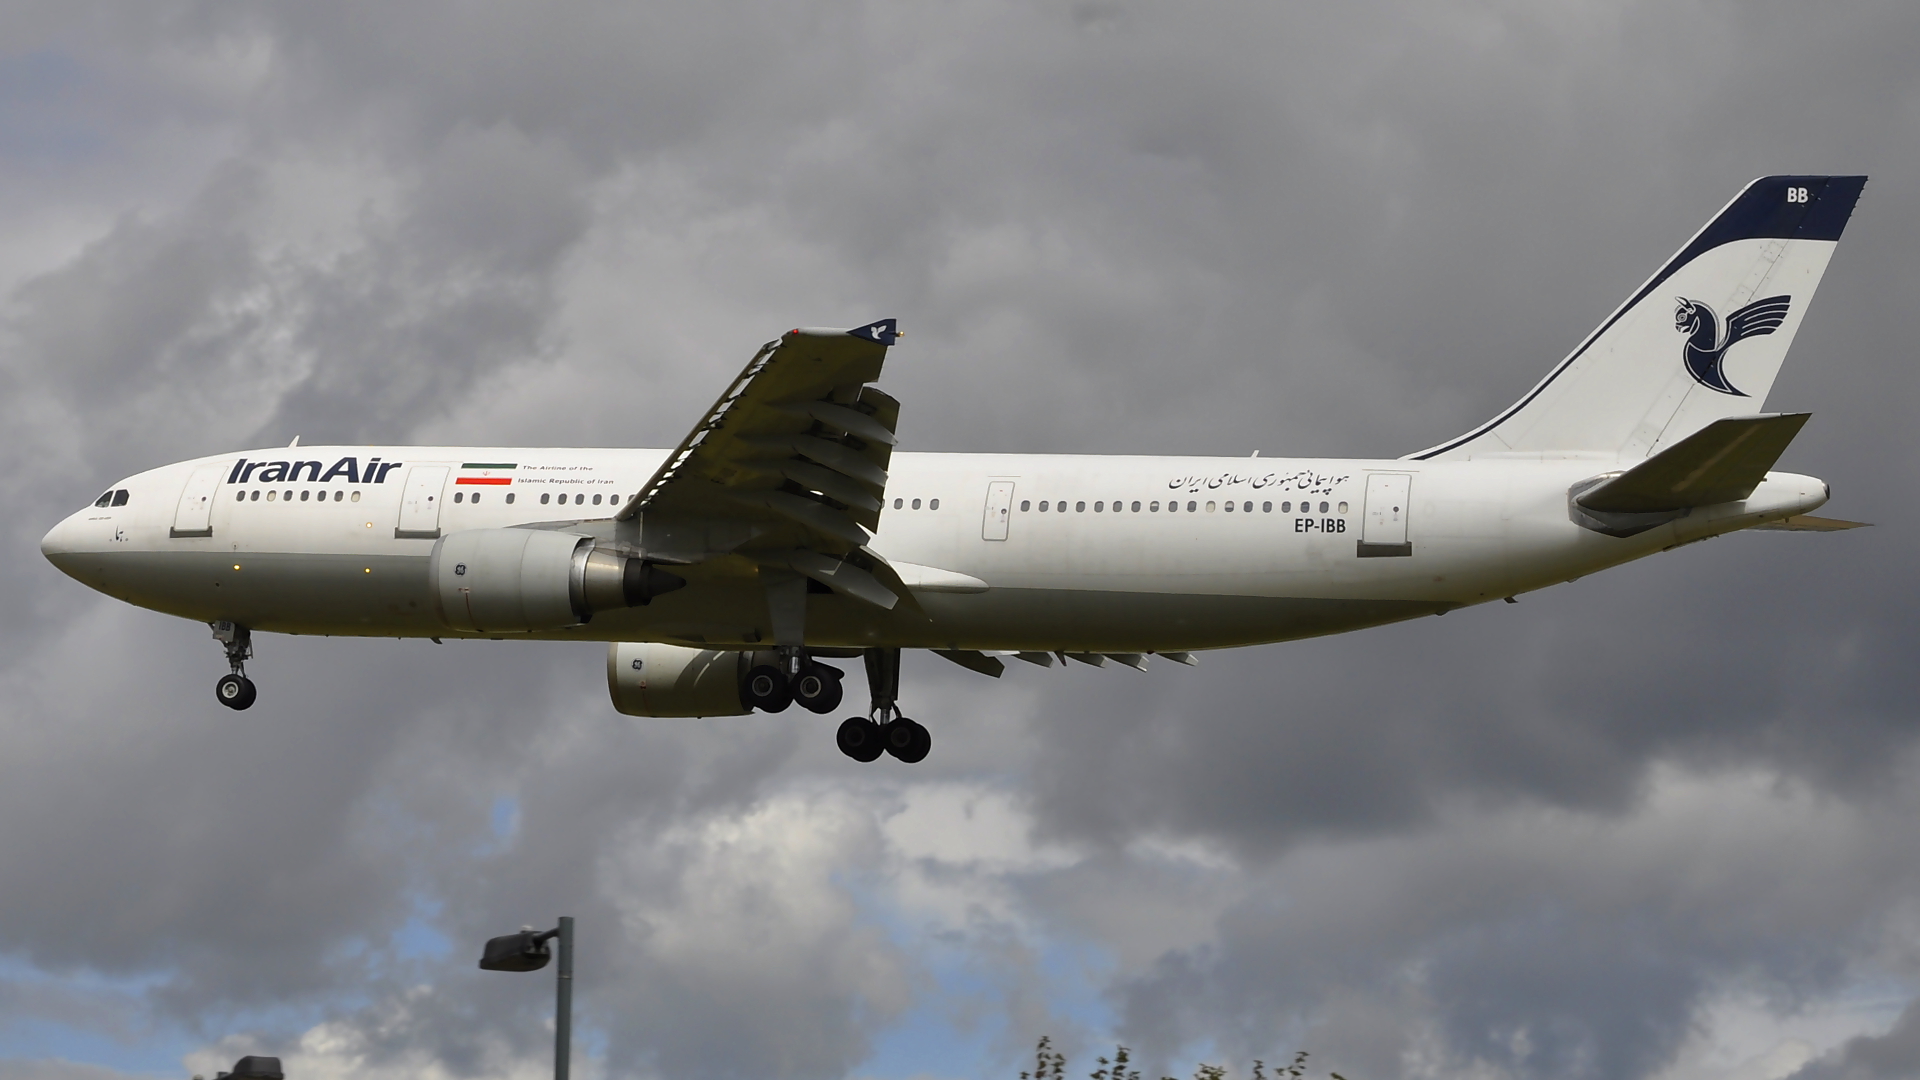 EP-IBB ✈ Iran Air Airbus 300B4-605R @ London-Heathrow